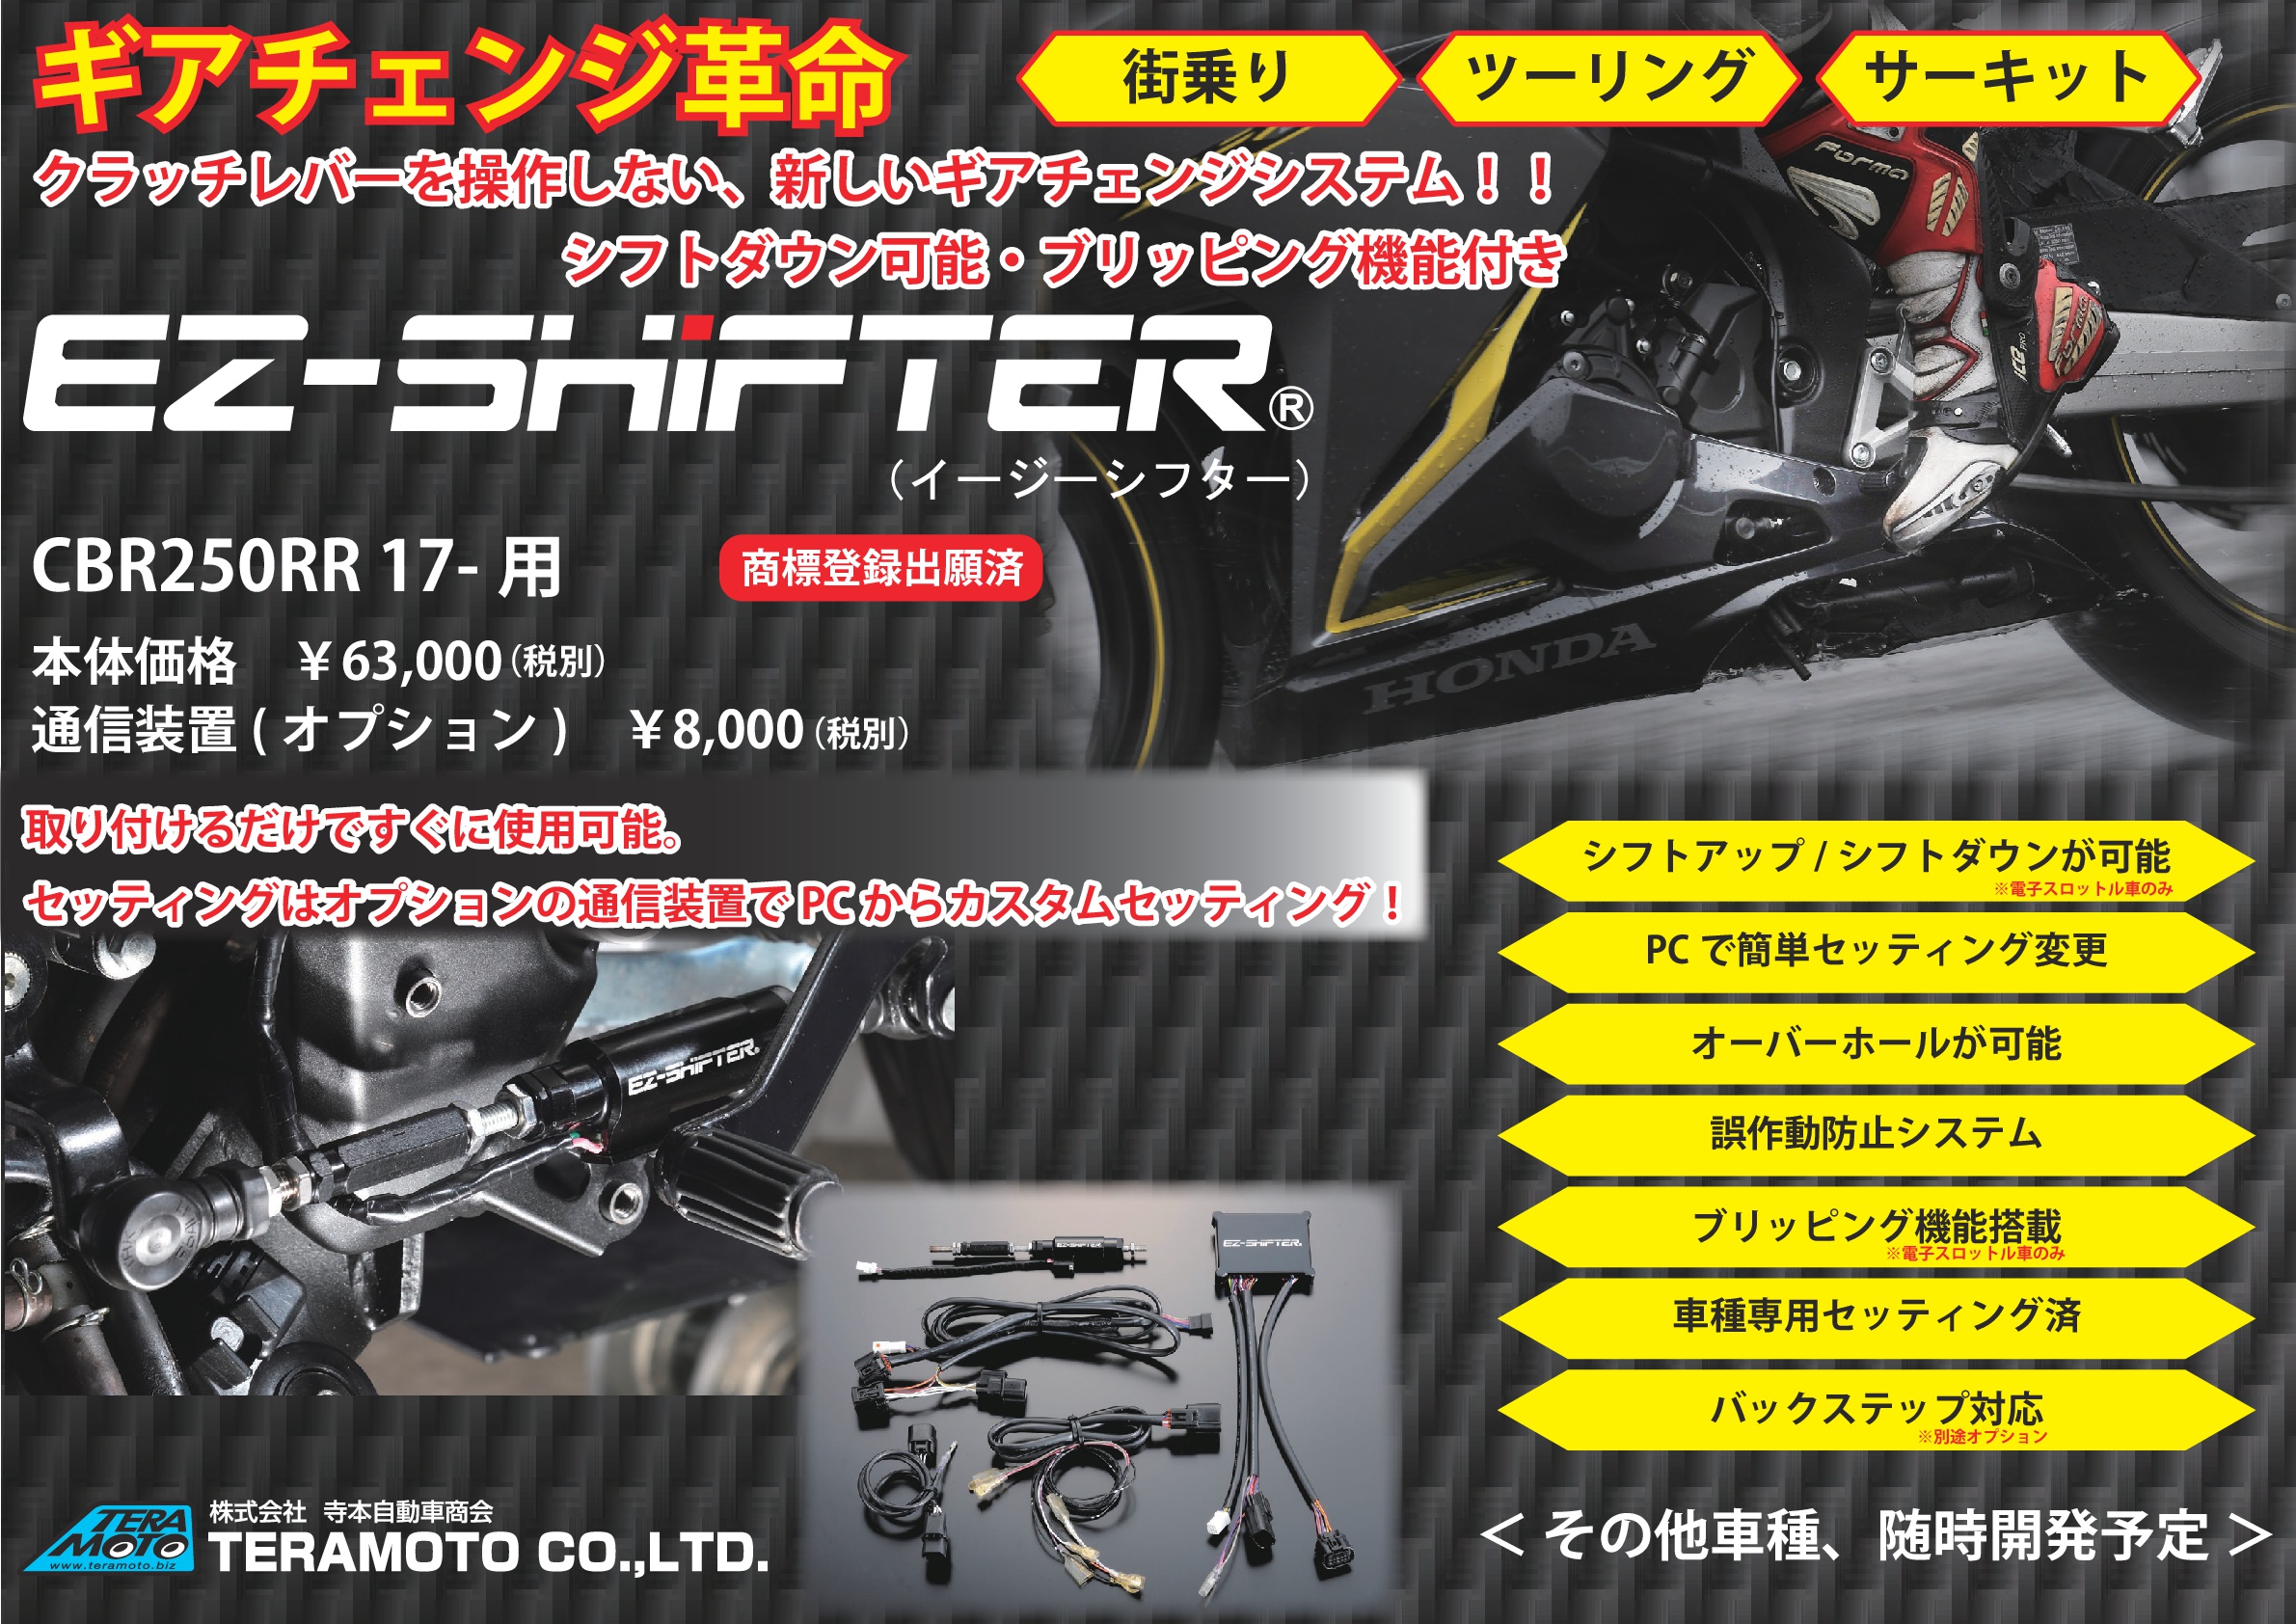 テレビで話題】 K select ShopEZ-SHiFTER CBR250RR 17- EZ-SFR-4180